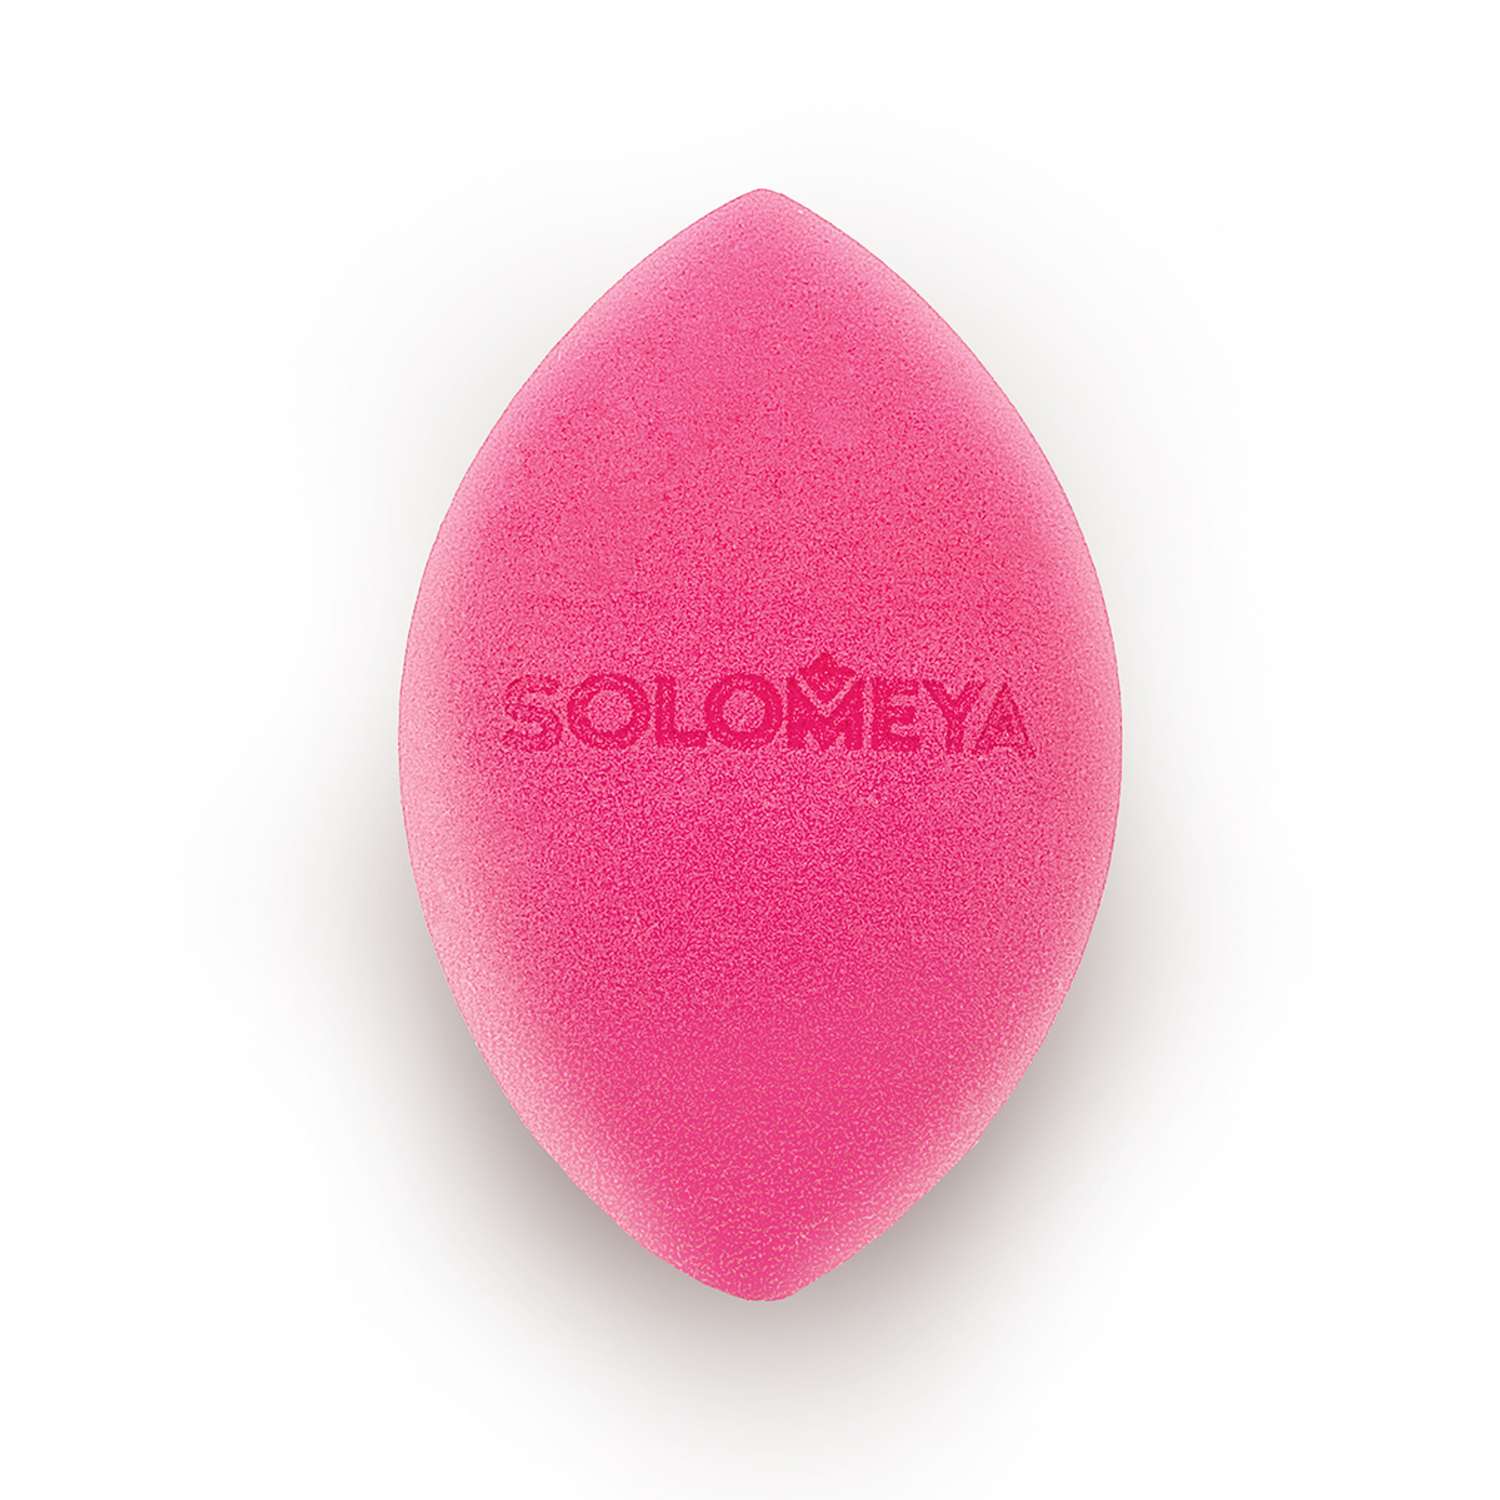 Спонж для макияжа SOLOMEYA Косметический со срезом - фото 2